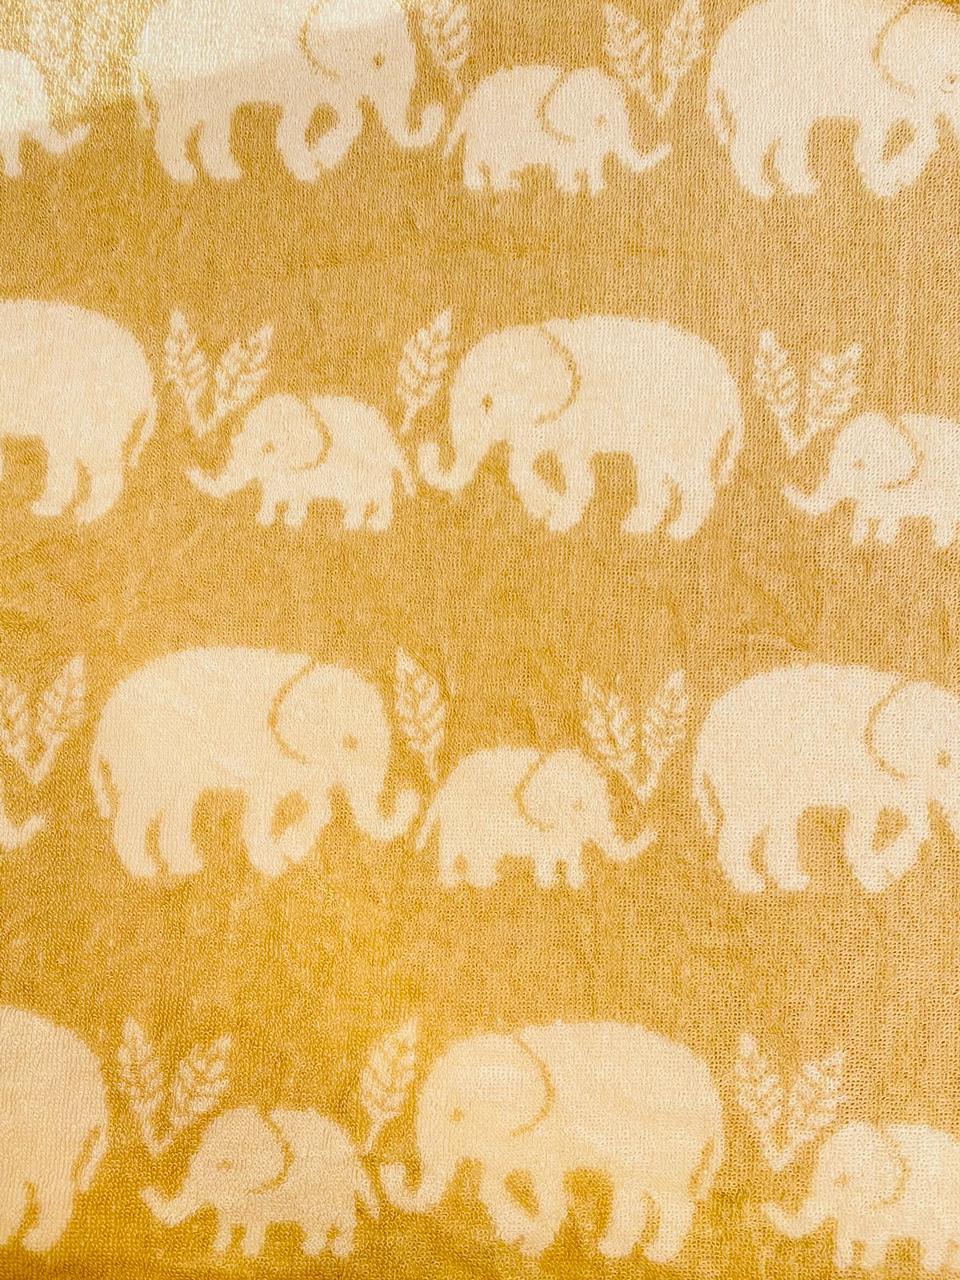 Double sided elephant towel